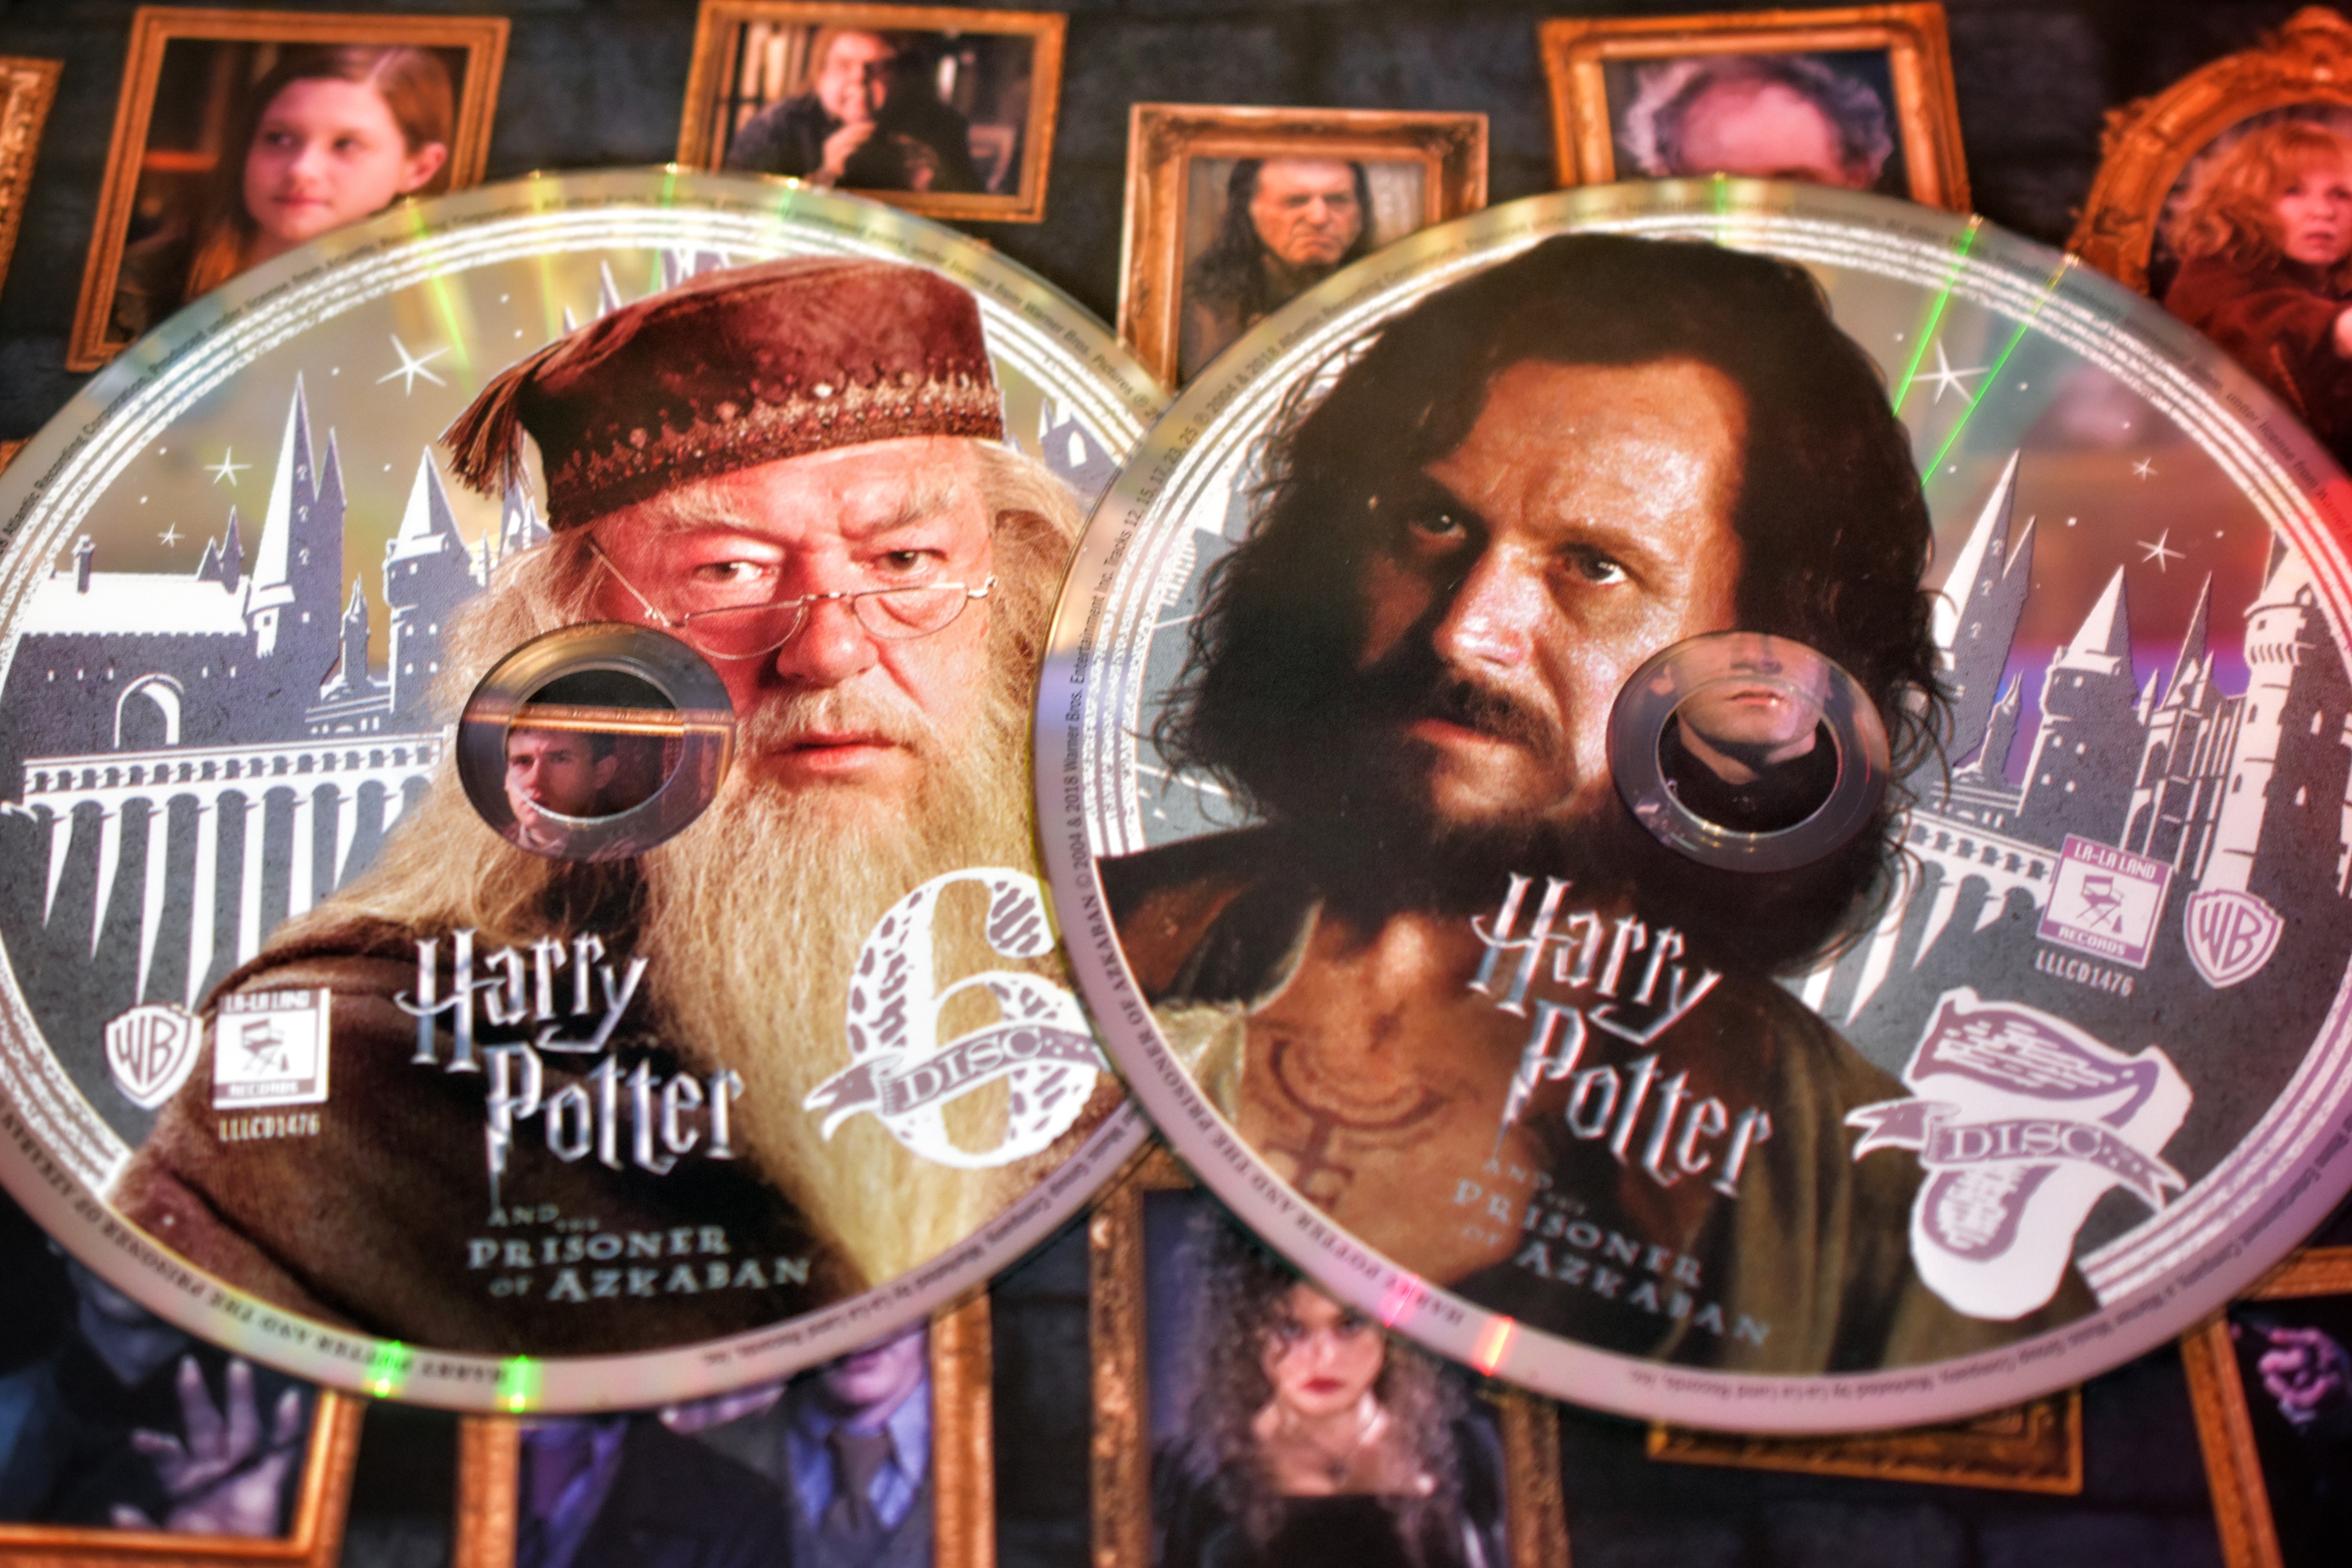 Harry Potter Der Gefangene von Azkaban CDs